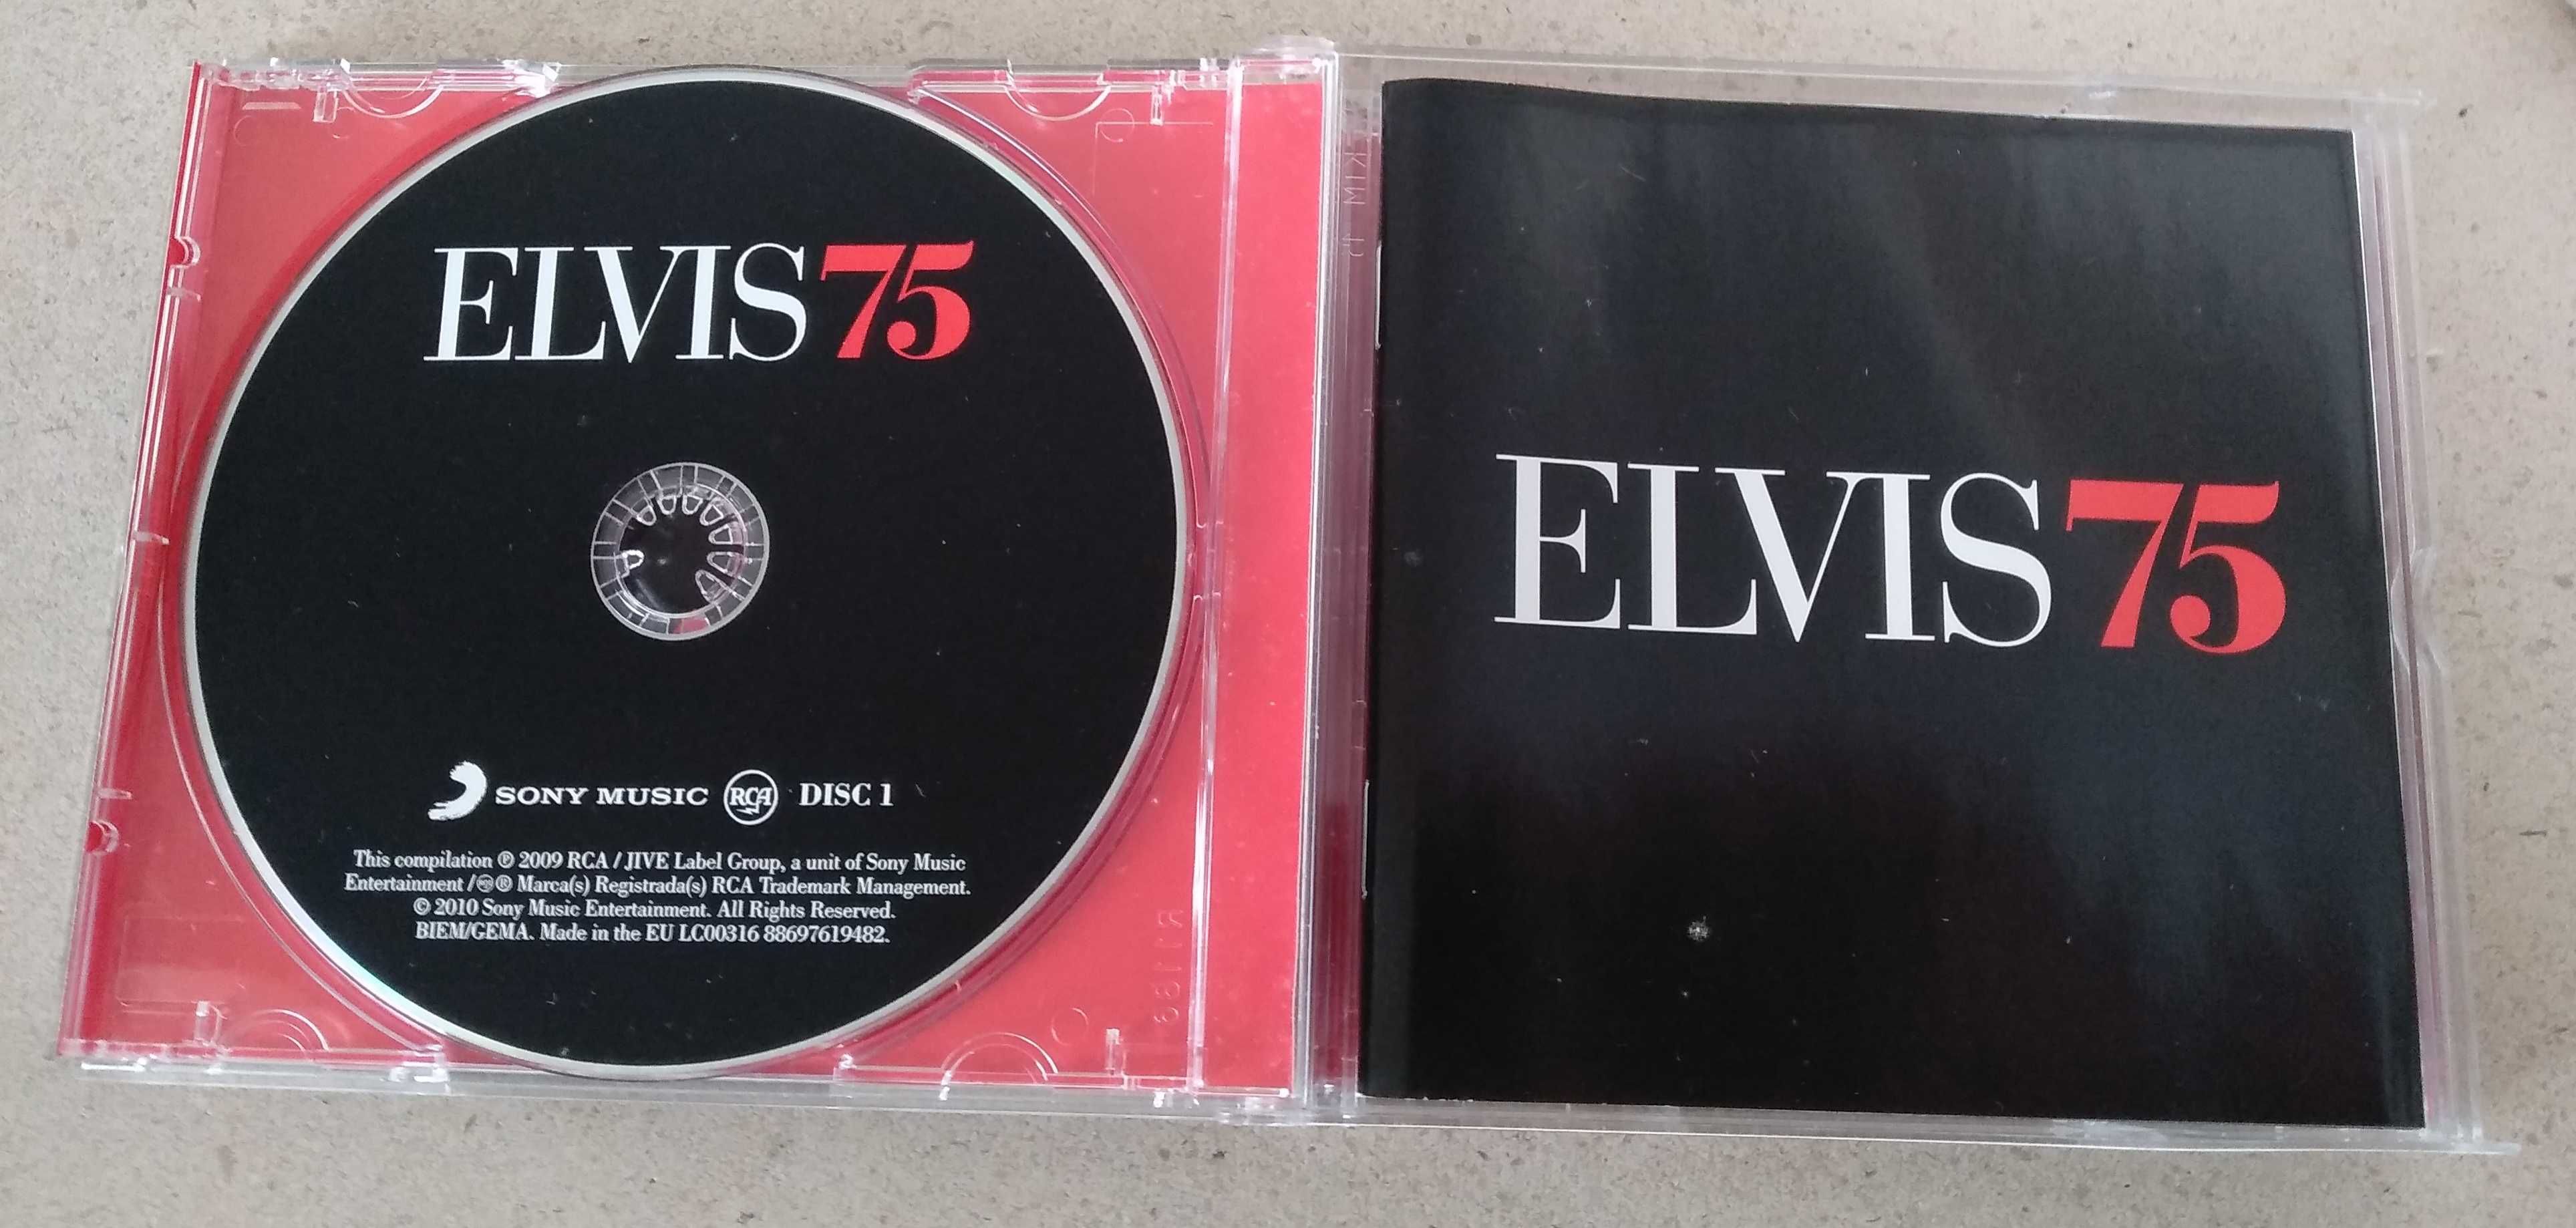 CD de música do Elvis Presley 75